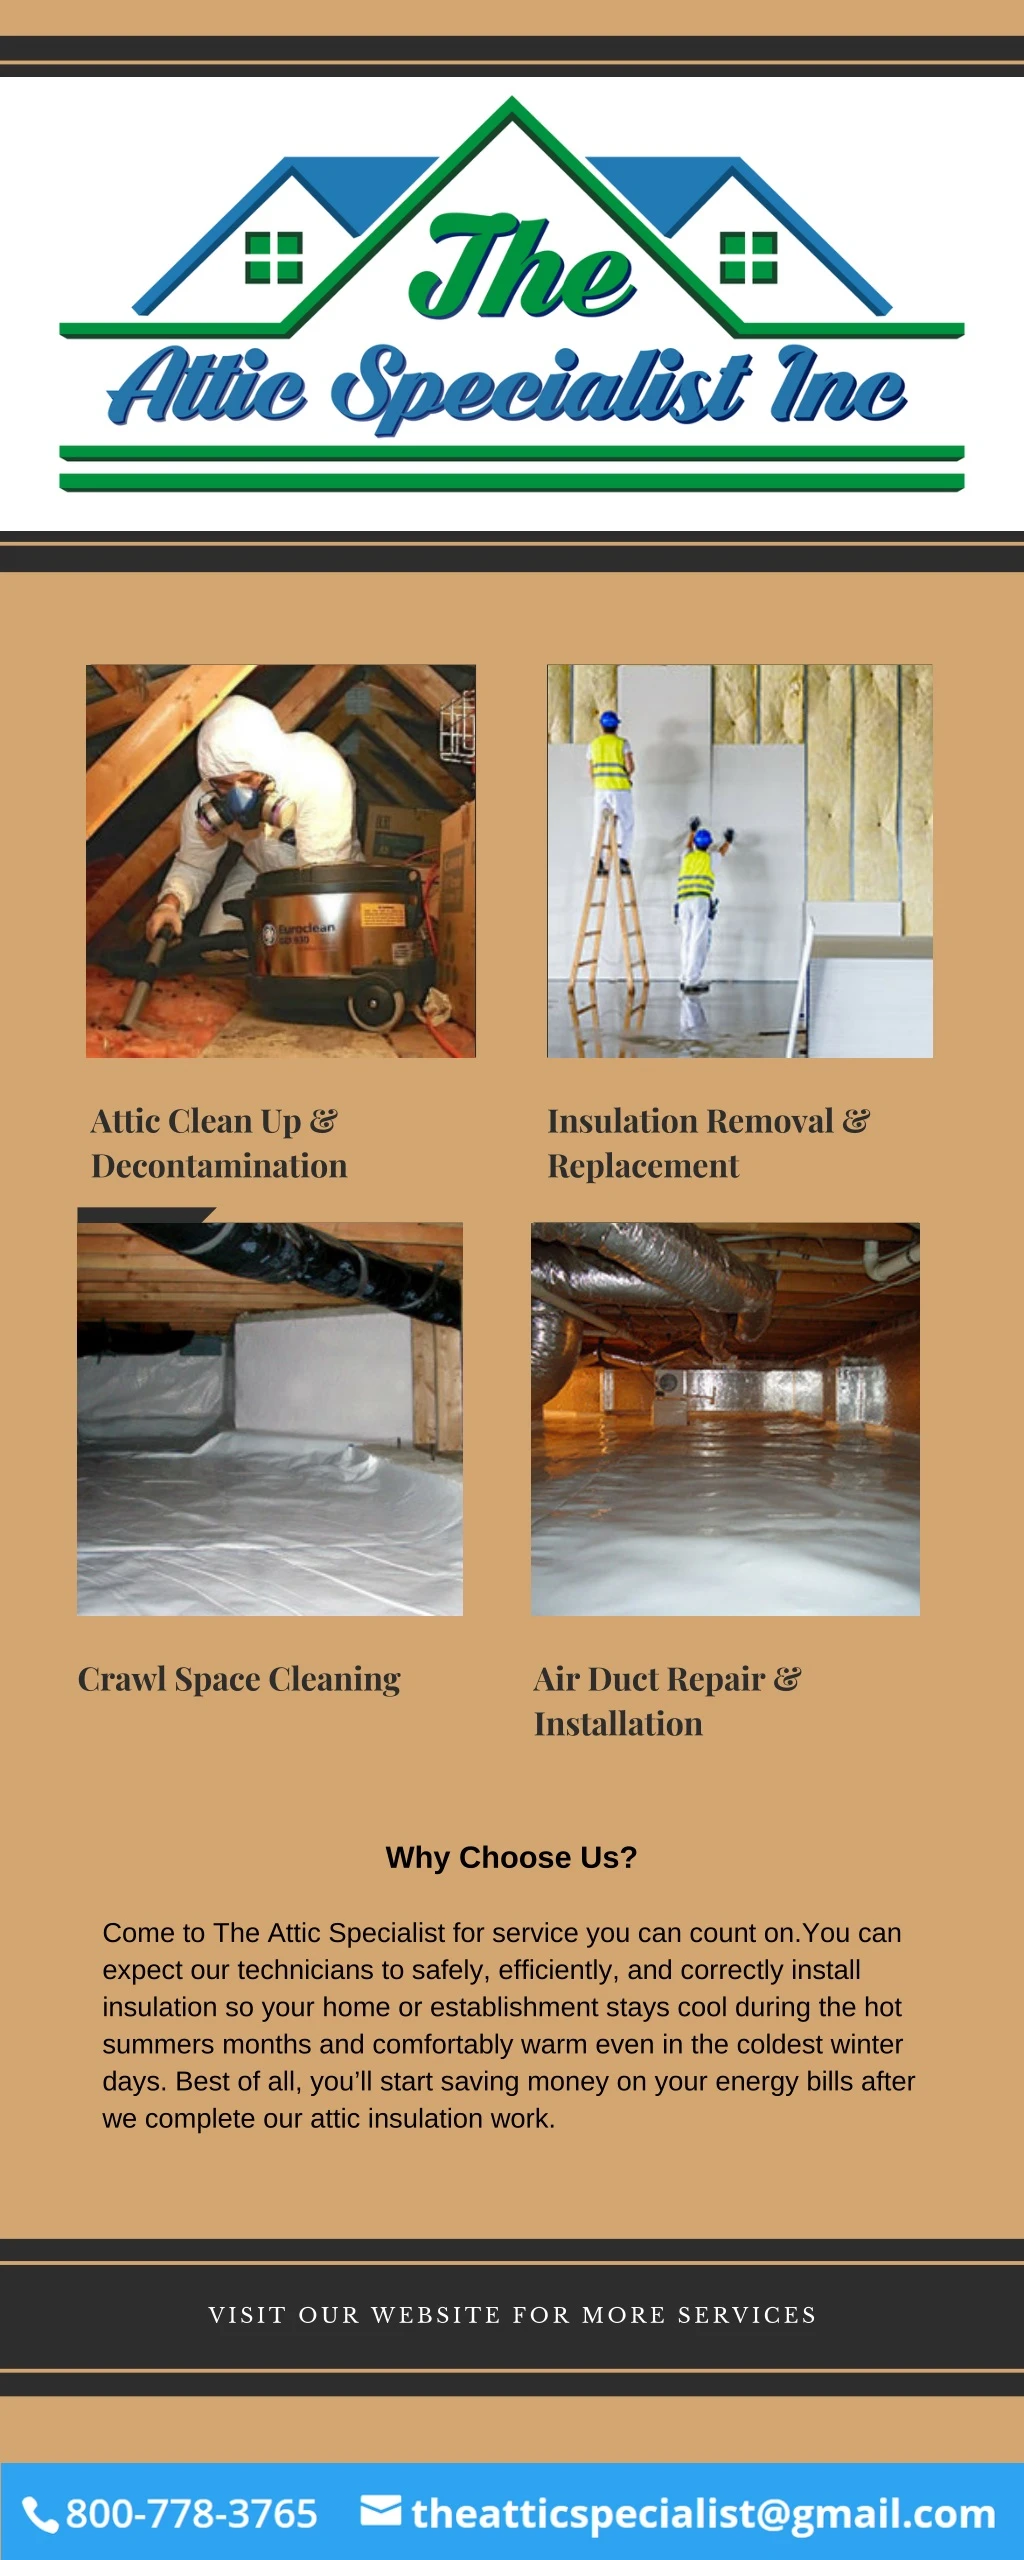 attic clean up decontamination 3